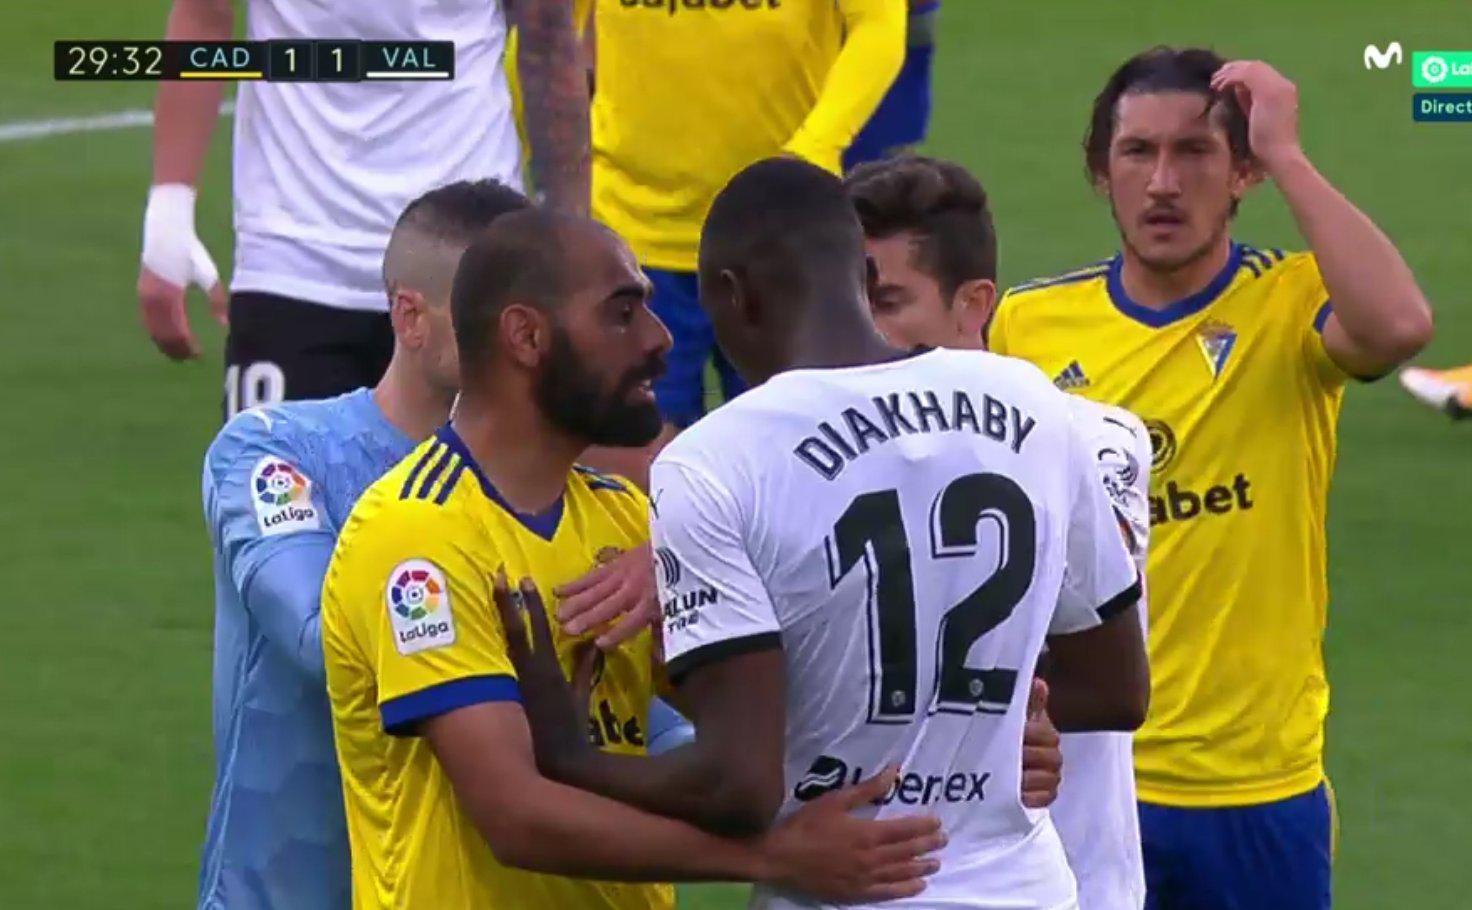 Mouctar Diakhabyye ırkçı saldırı... Valencia, Cadiz maçında sahayı terk etti